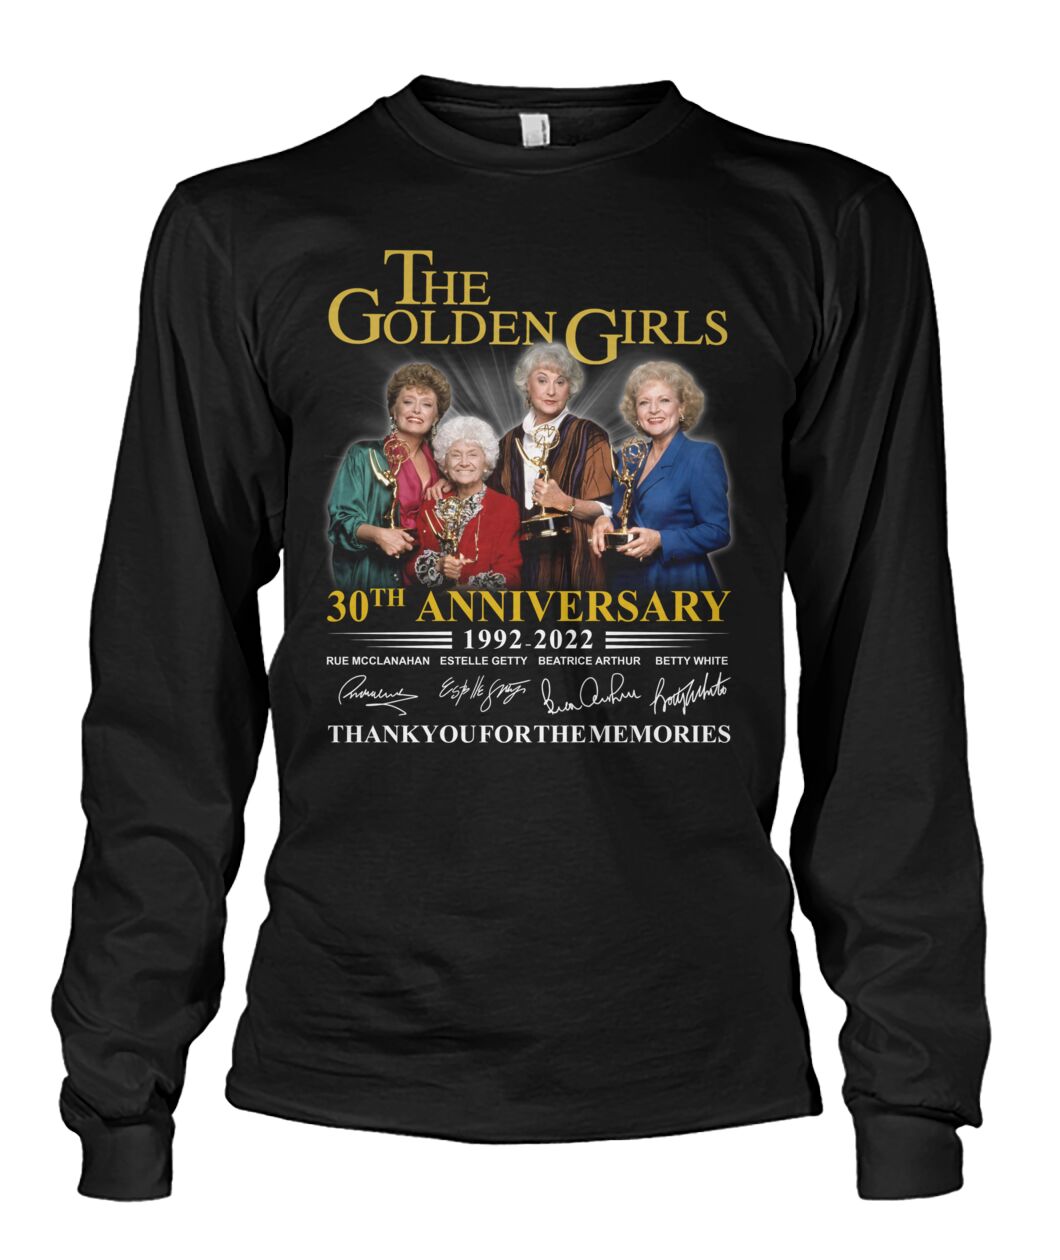 The Golden Girls 30th Anniversary 1992-2022 shirt, hoodie 15